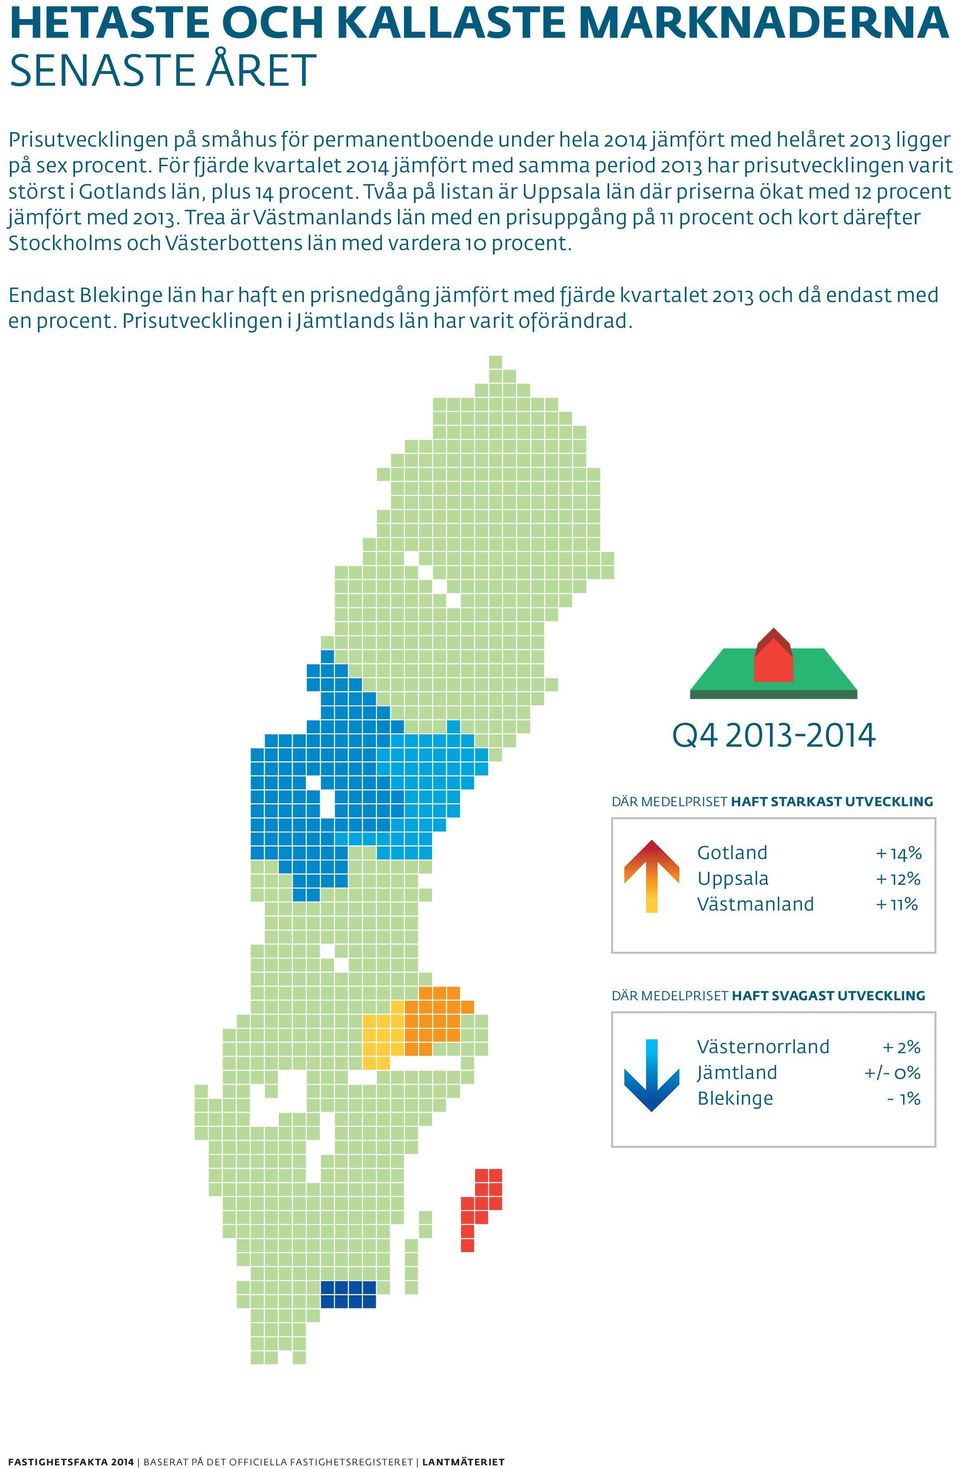 Trea är Västmanlands län med en prisuppgång på 11 procent och kort därefter län, plus 14 procent.